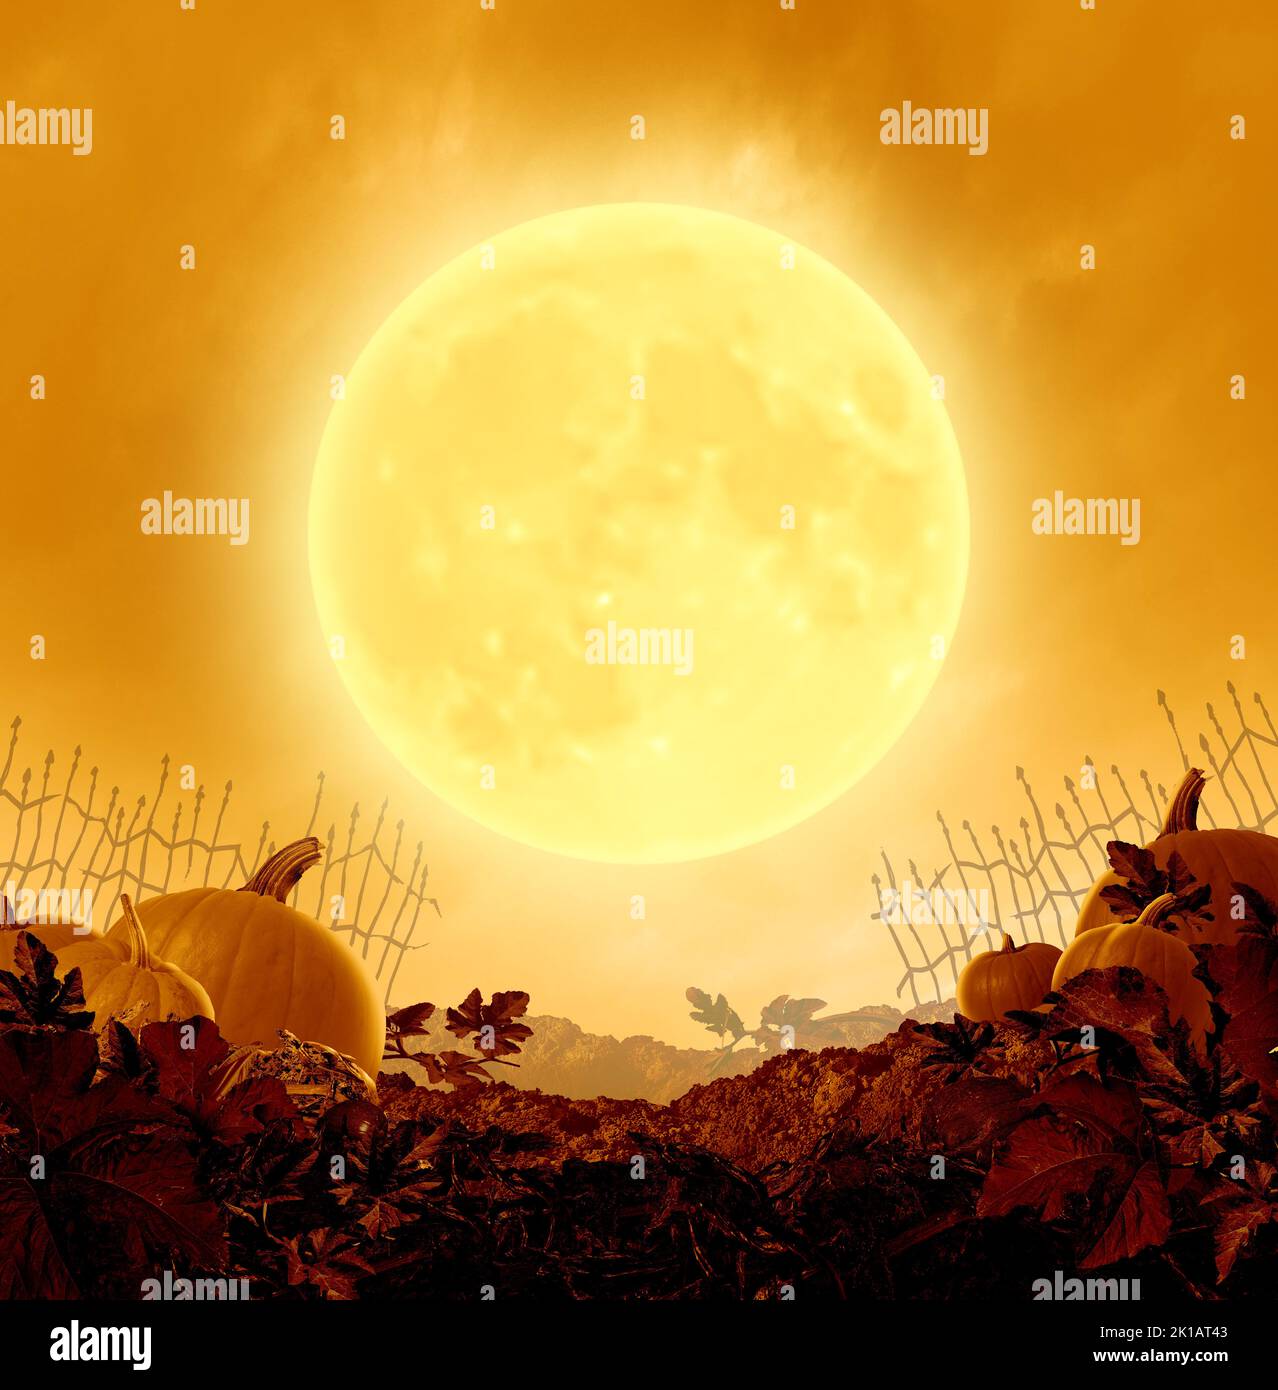 Affiche de nuit d'Halloween et arrière-plan de fête d'automne avec une lune orange illuminée sur une vieille tache de citrouille créepy grungy dans un style d'illustration 3D. Banque D'Images